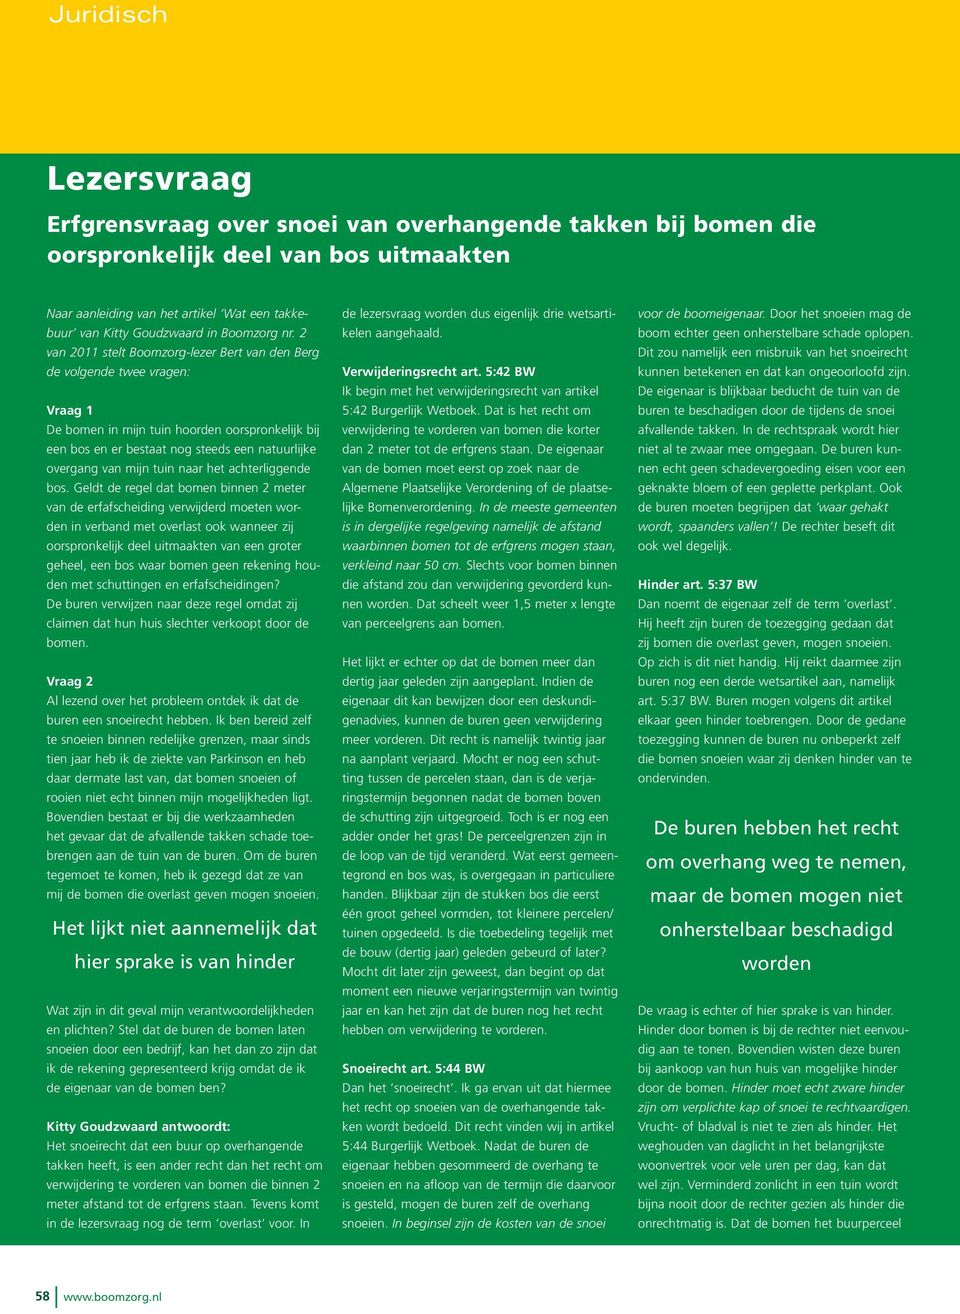 2 van 2011 stelt Boomzorg-lezer Bert van den Berg de volgende twee vragen: Vraag 1 De bomen in mijn tuin hoorden oorspronkelijk bij een bos en er bestaat nog steeds een natuurlijke overgang van mijn